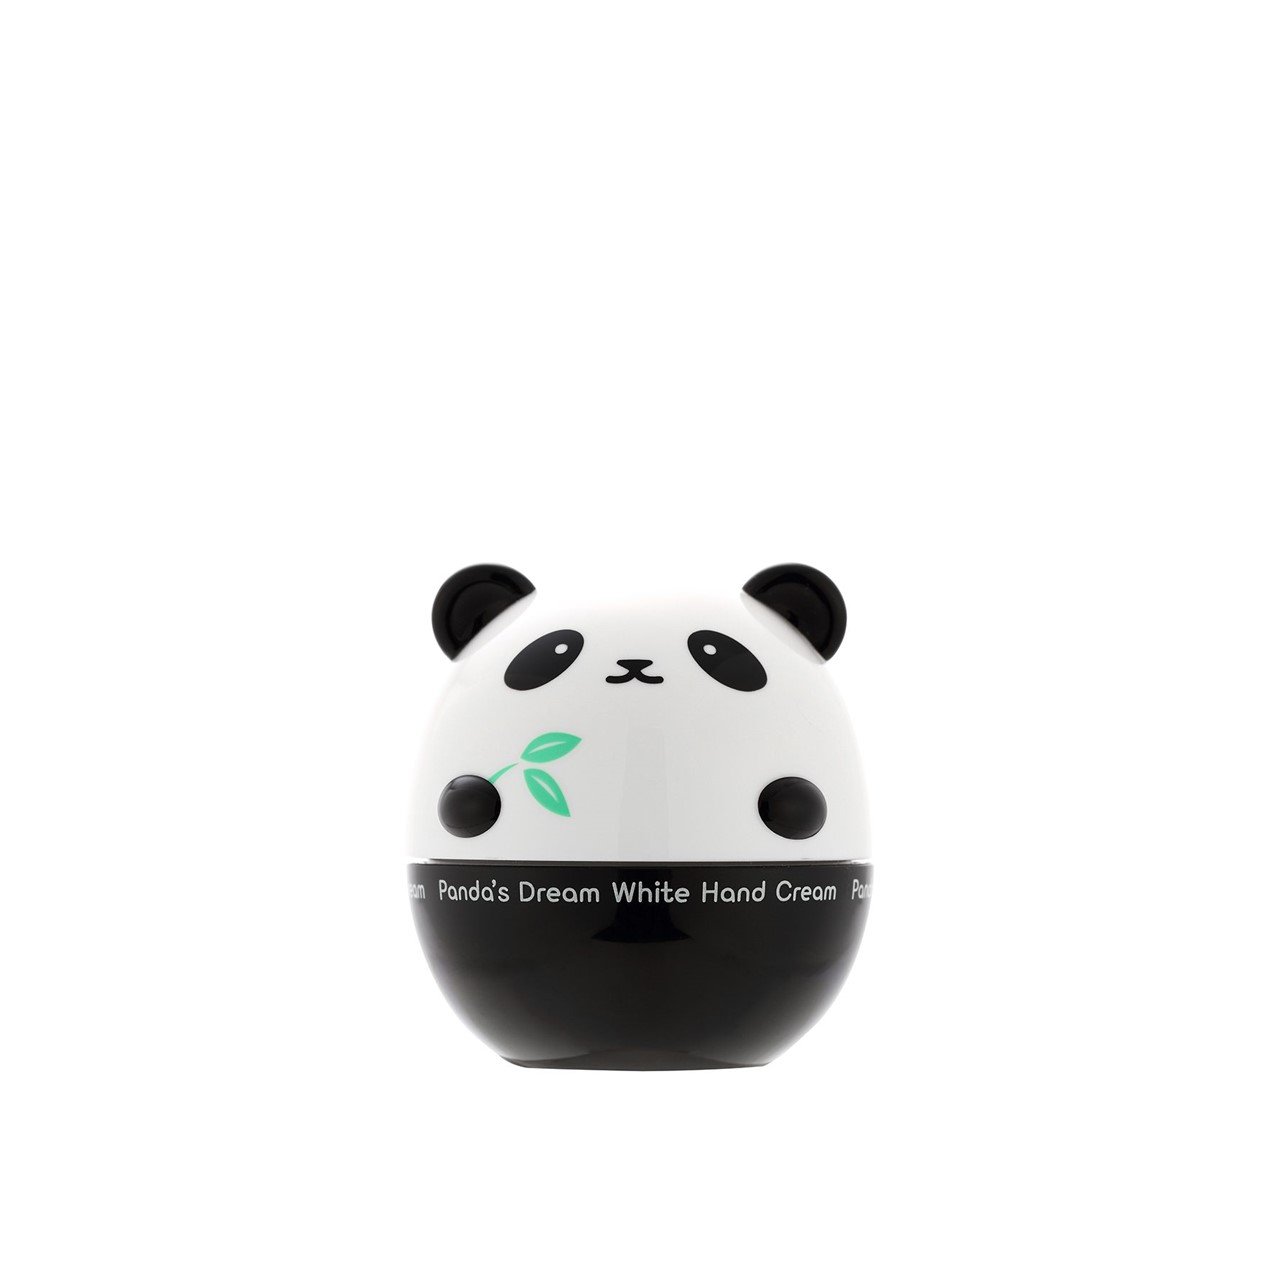 TONYMOLY Panda's Dream White Hand Cream 30g